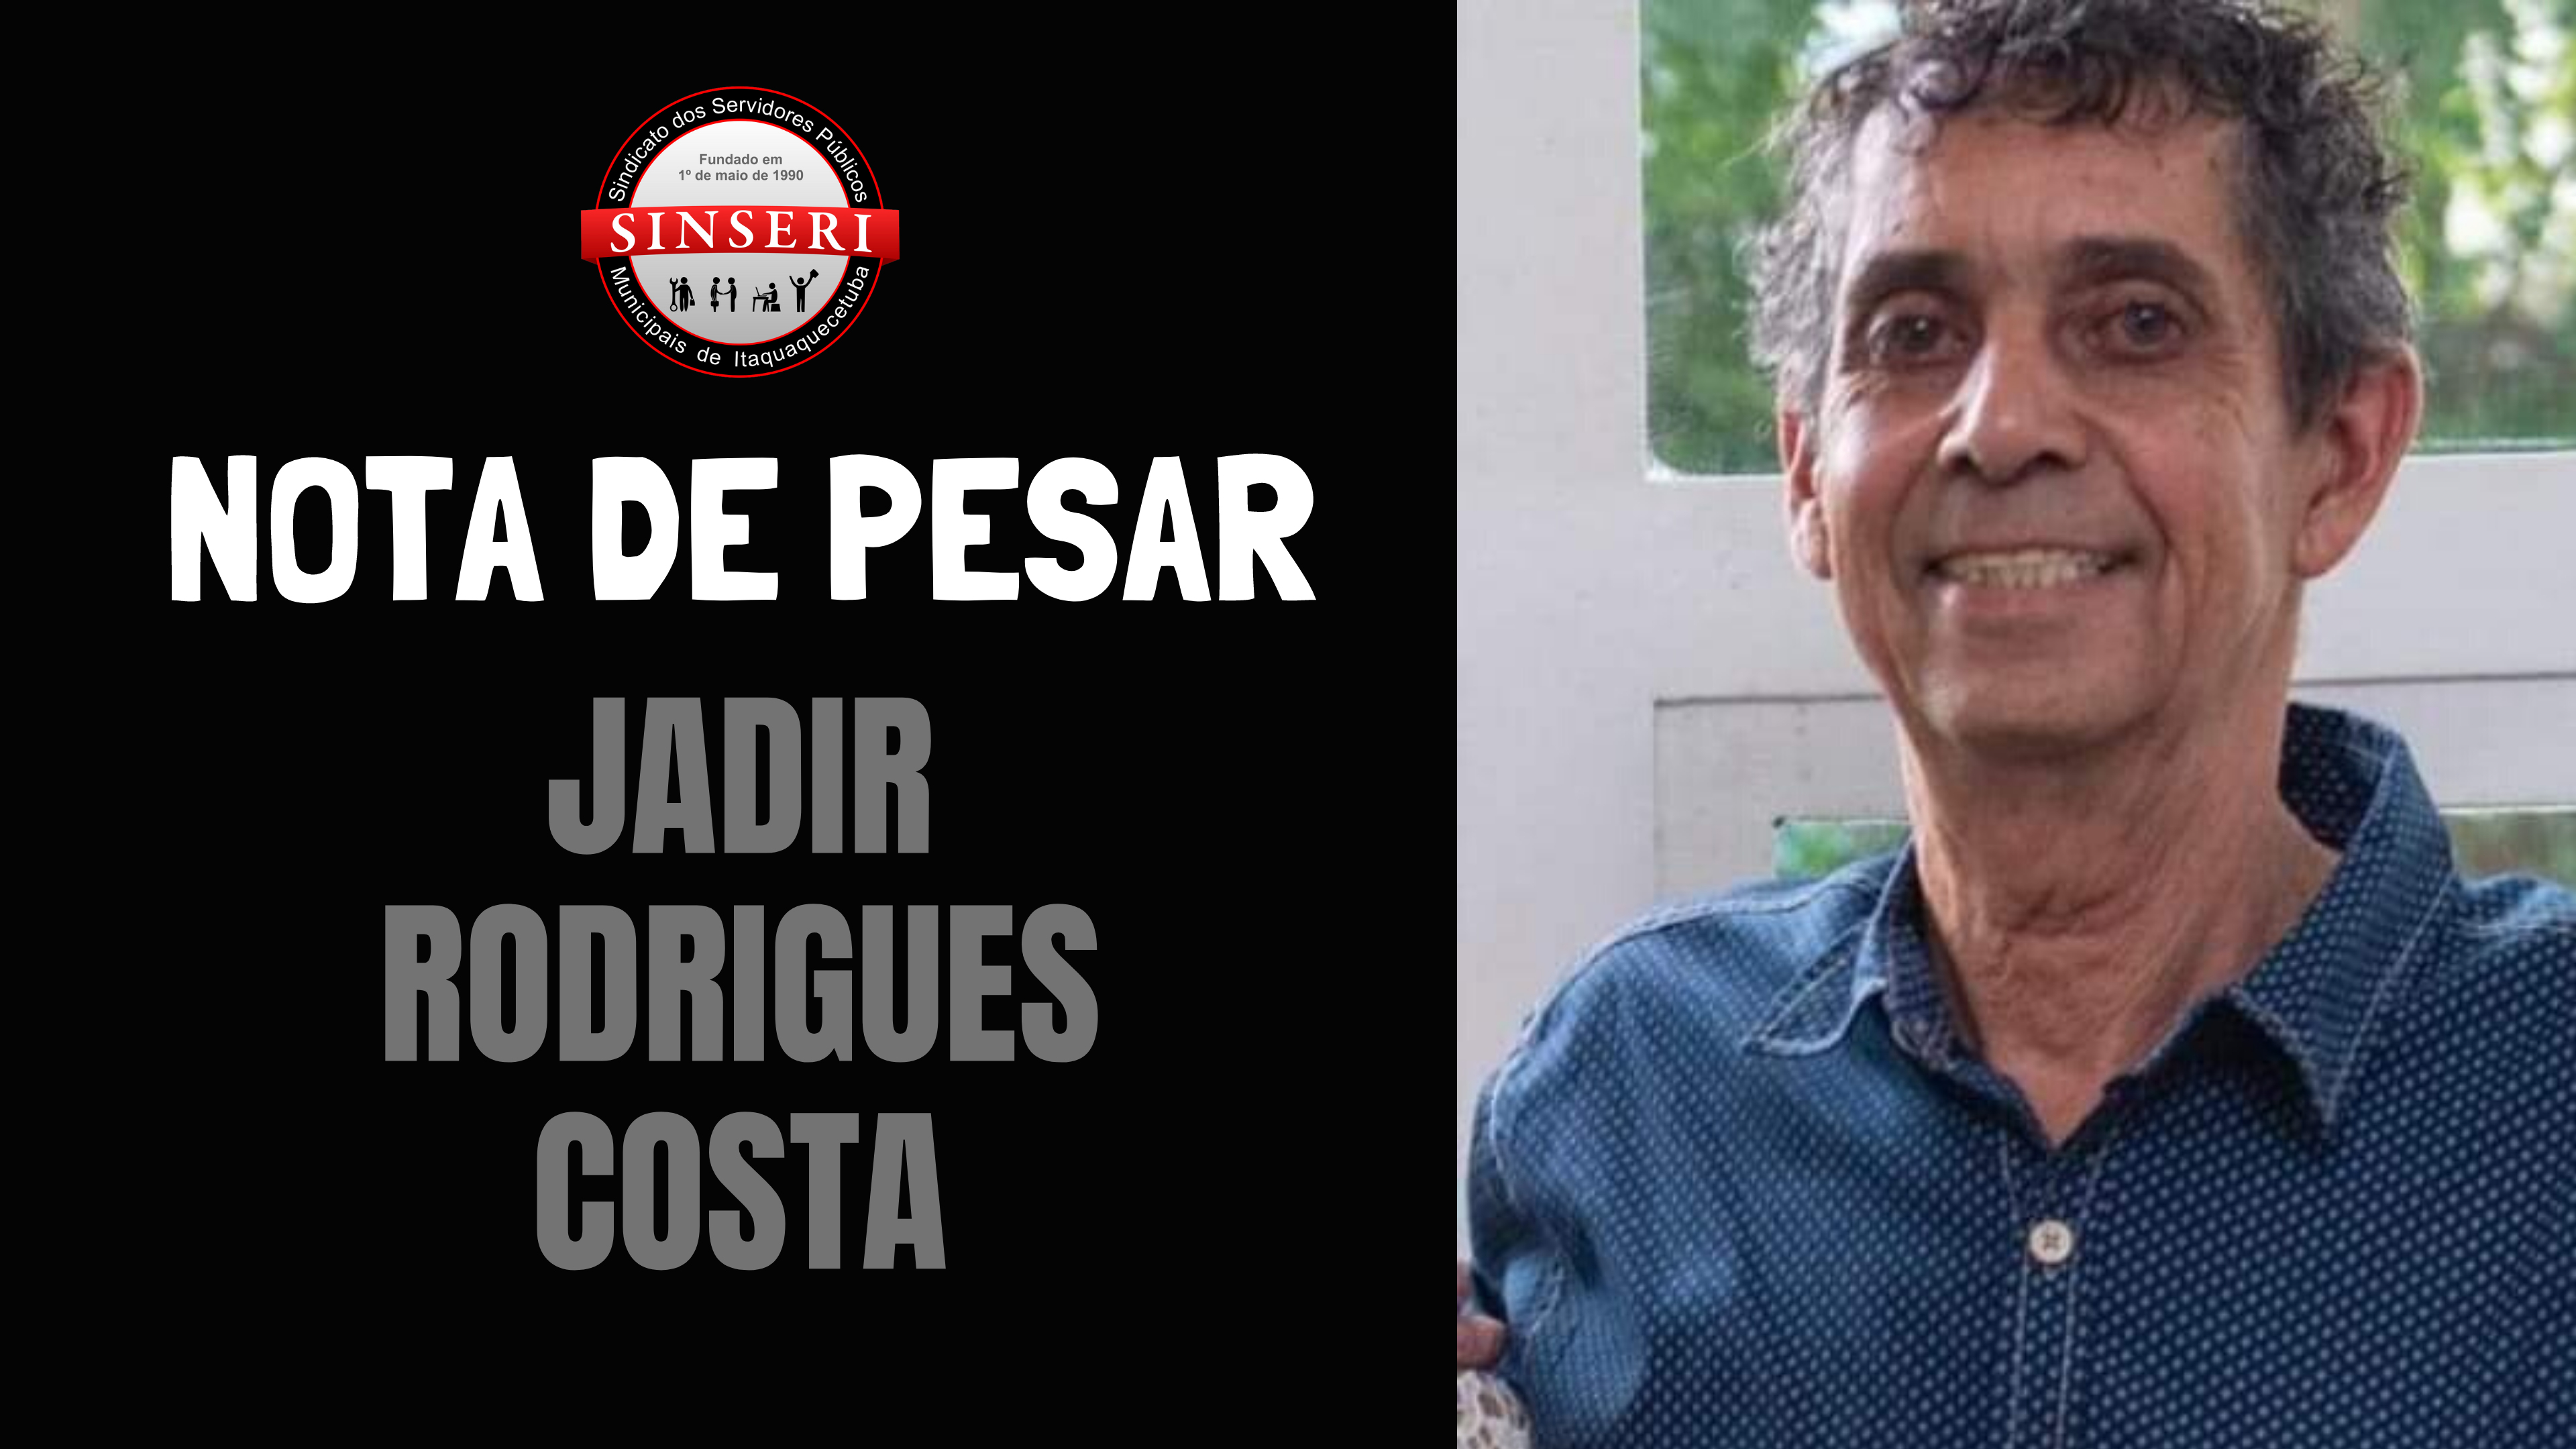 Nota de Pesar | Jadir Rodrigues Costa, Servidor mais antigo na ativa, deixará saudades!